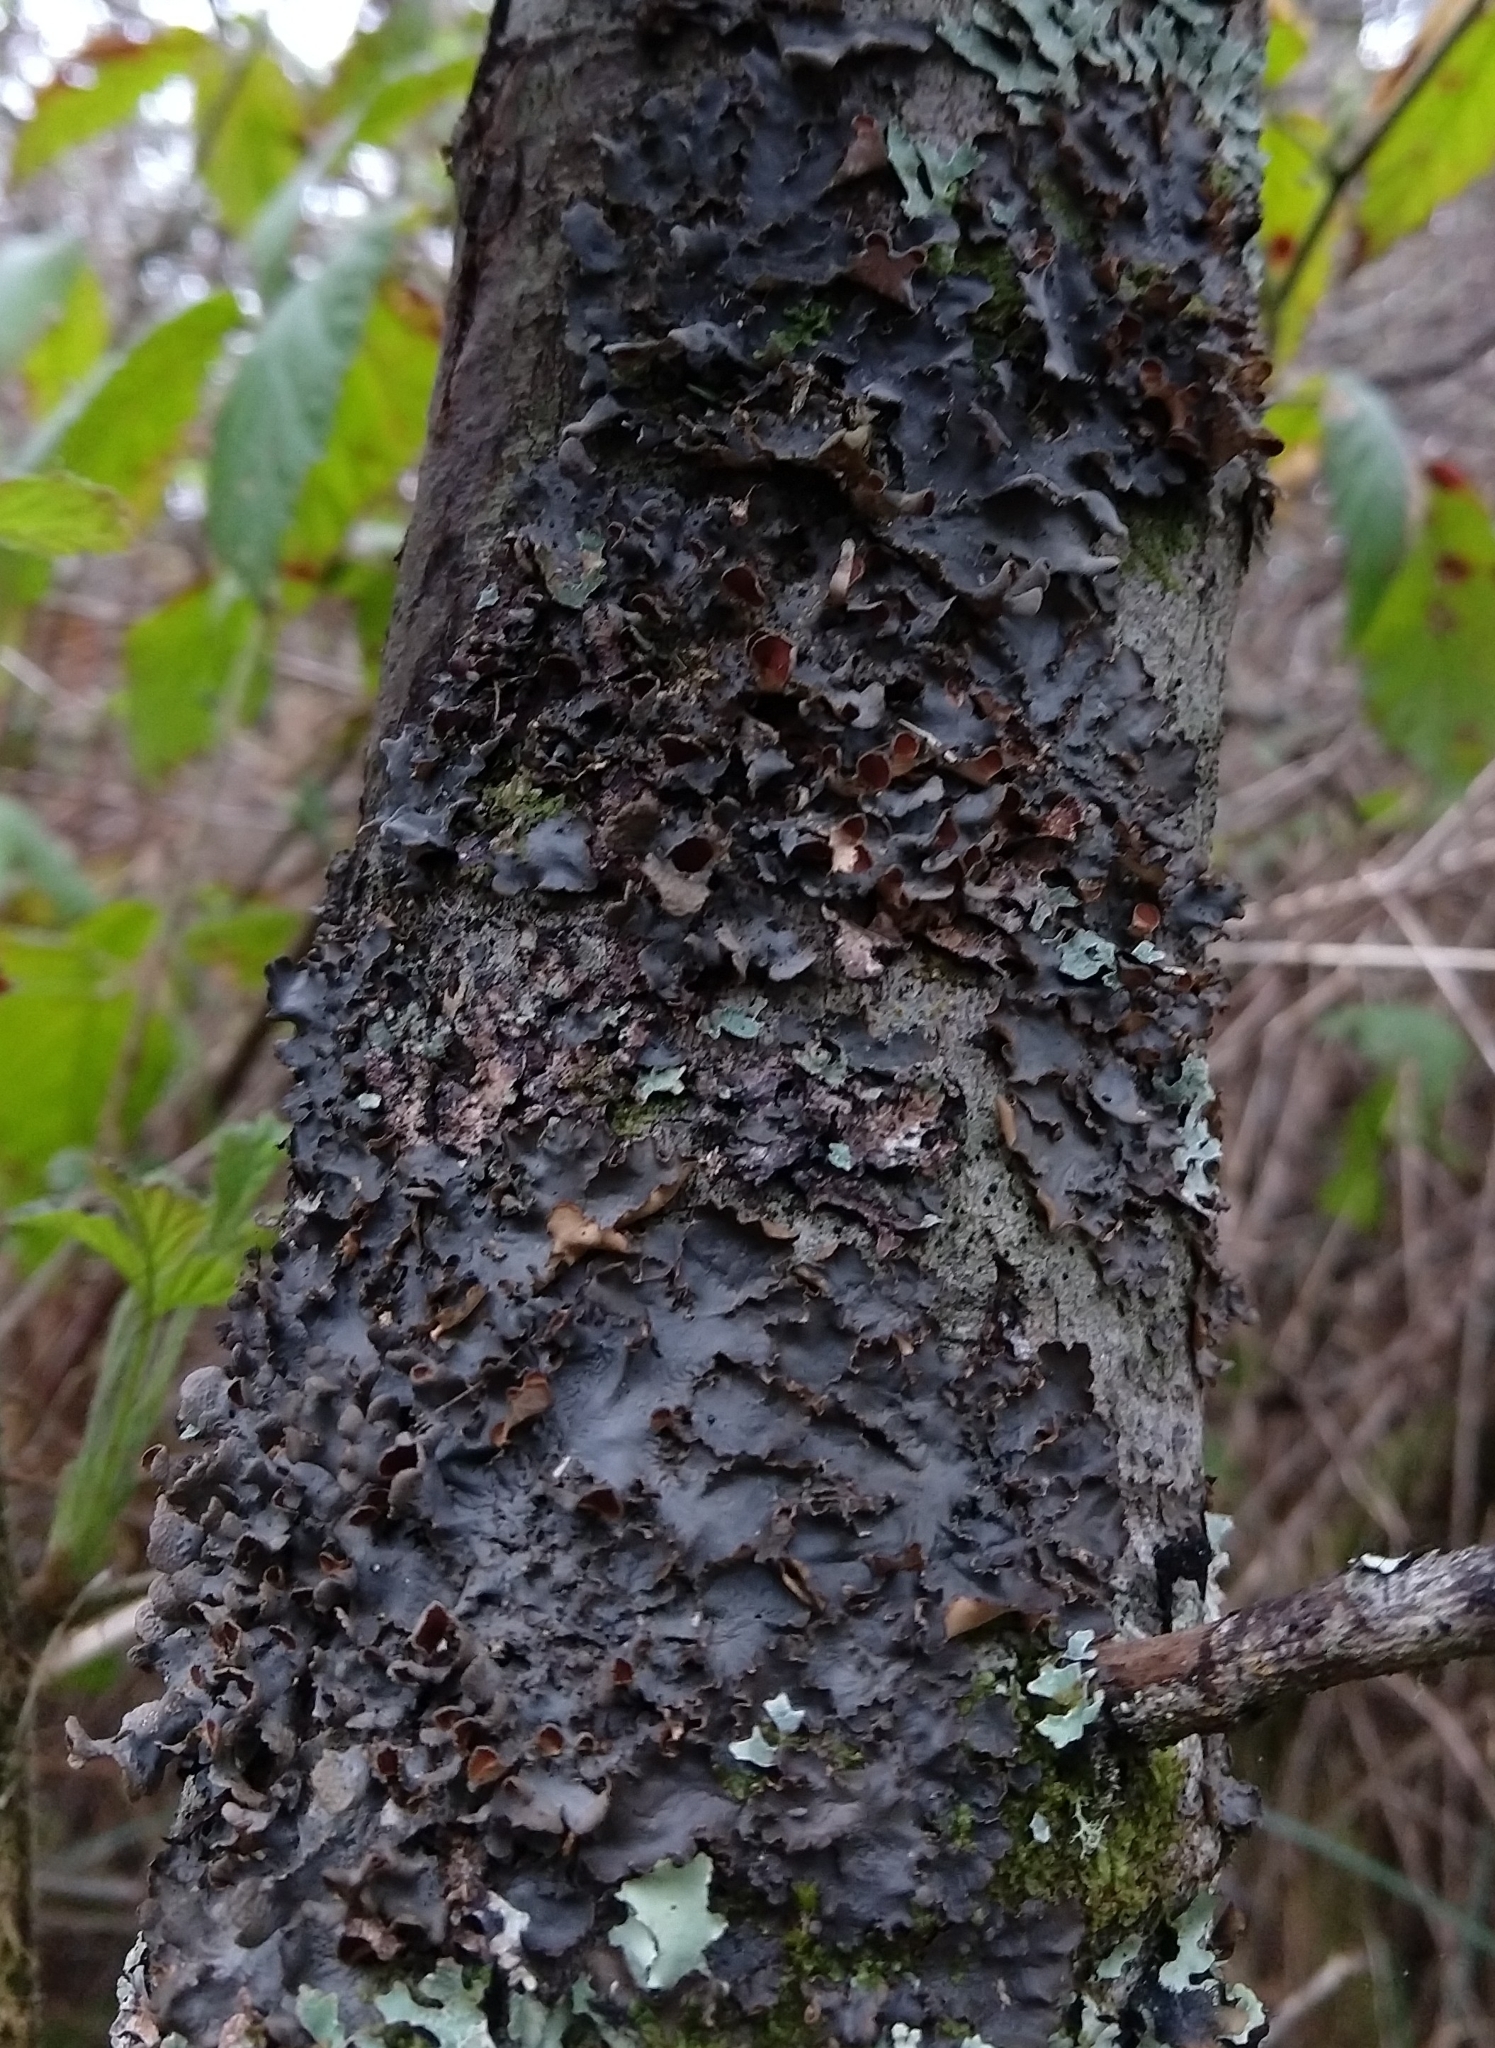 Un liquen de color marrón negruzco oscuro que crece oprimido en el tronco de un árbol